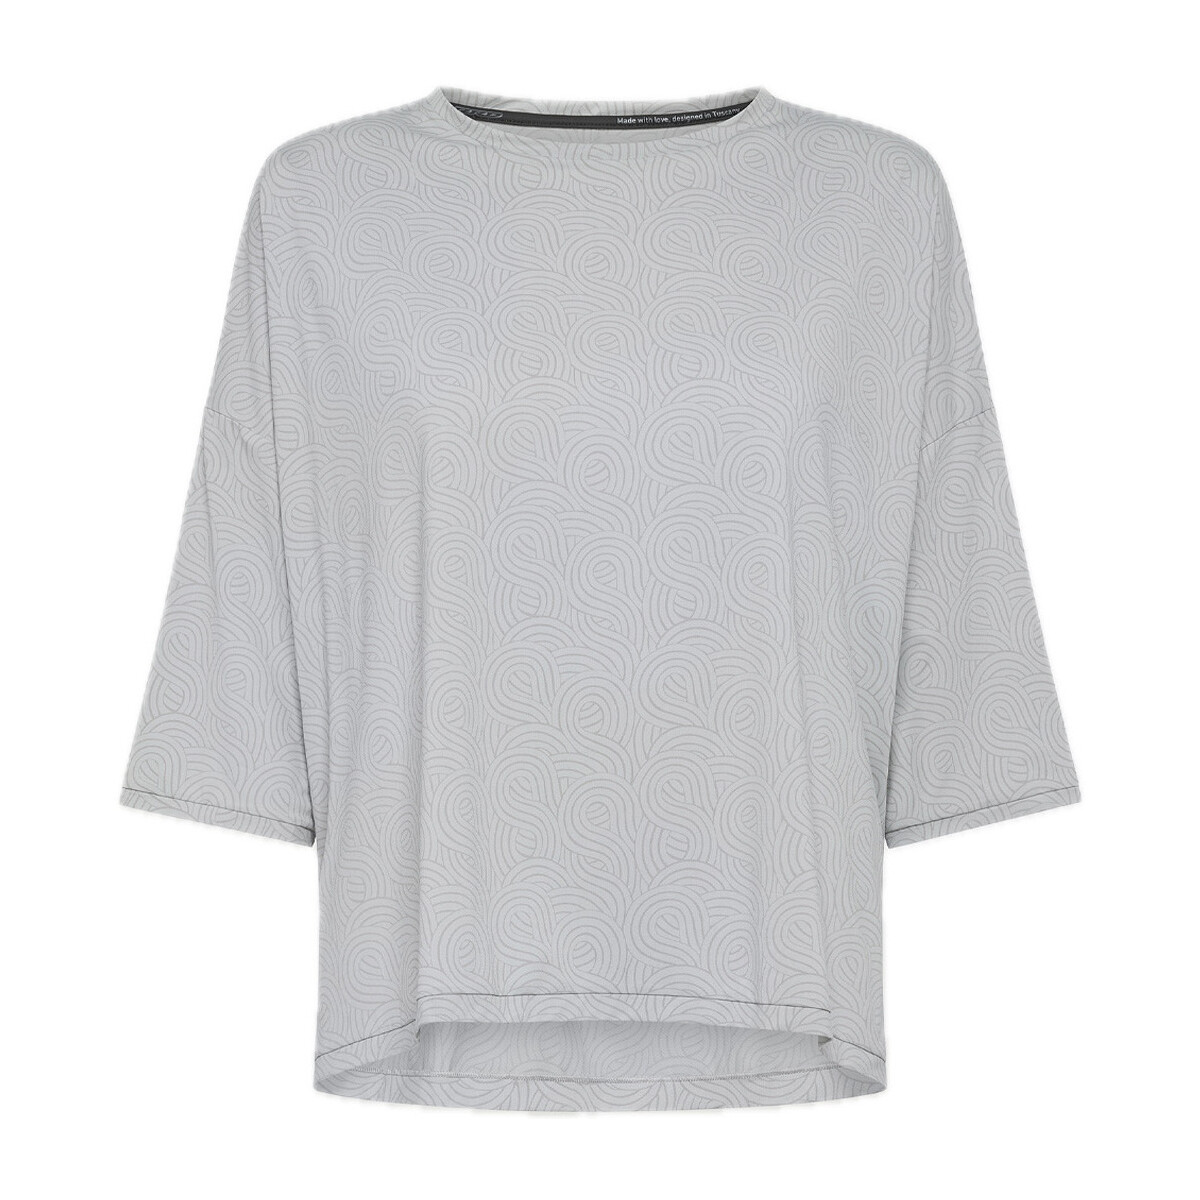 Vêtements Femme T-shirts manches courtes Rrd - Roberto Ricci Designs 24716-86 Autres